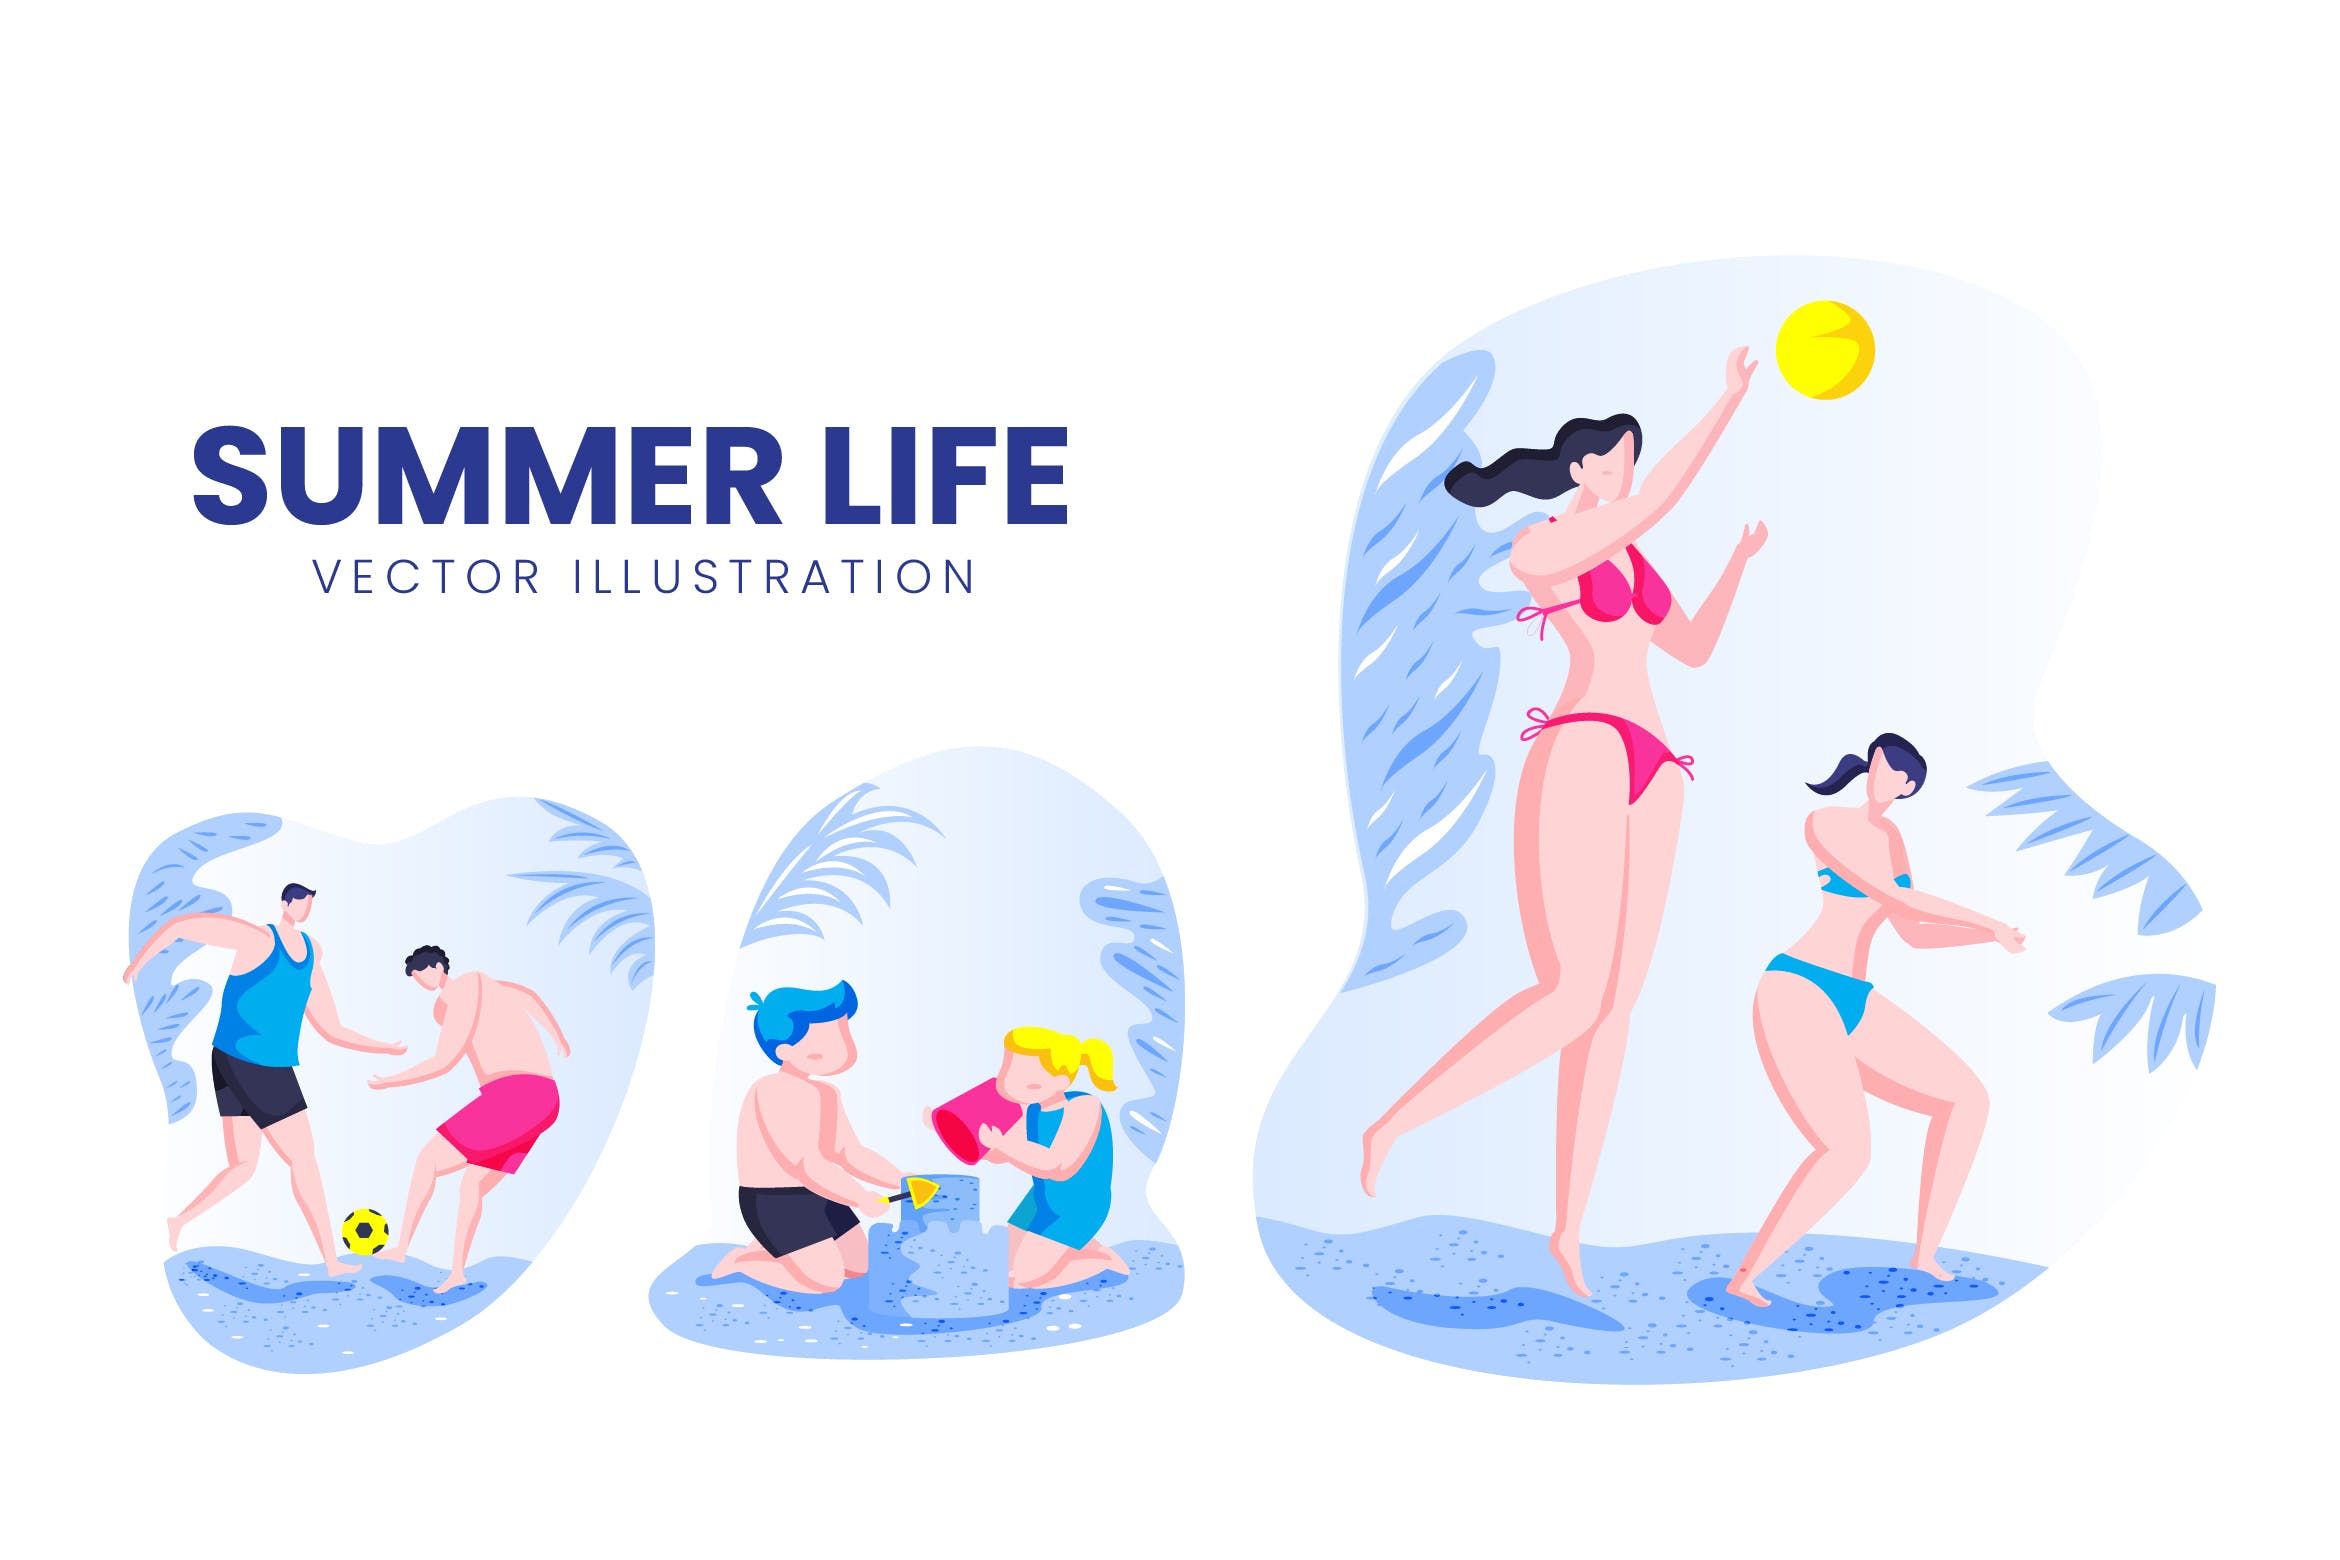 夏季生活人物形象16图库精选手绘插画矢量素材 Summer Life Activity Vector Character Set插图